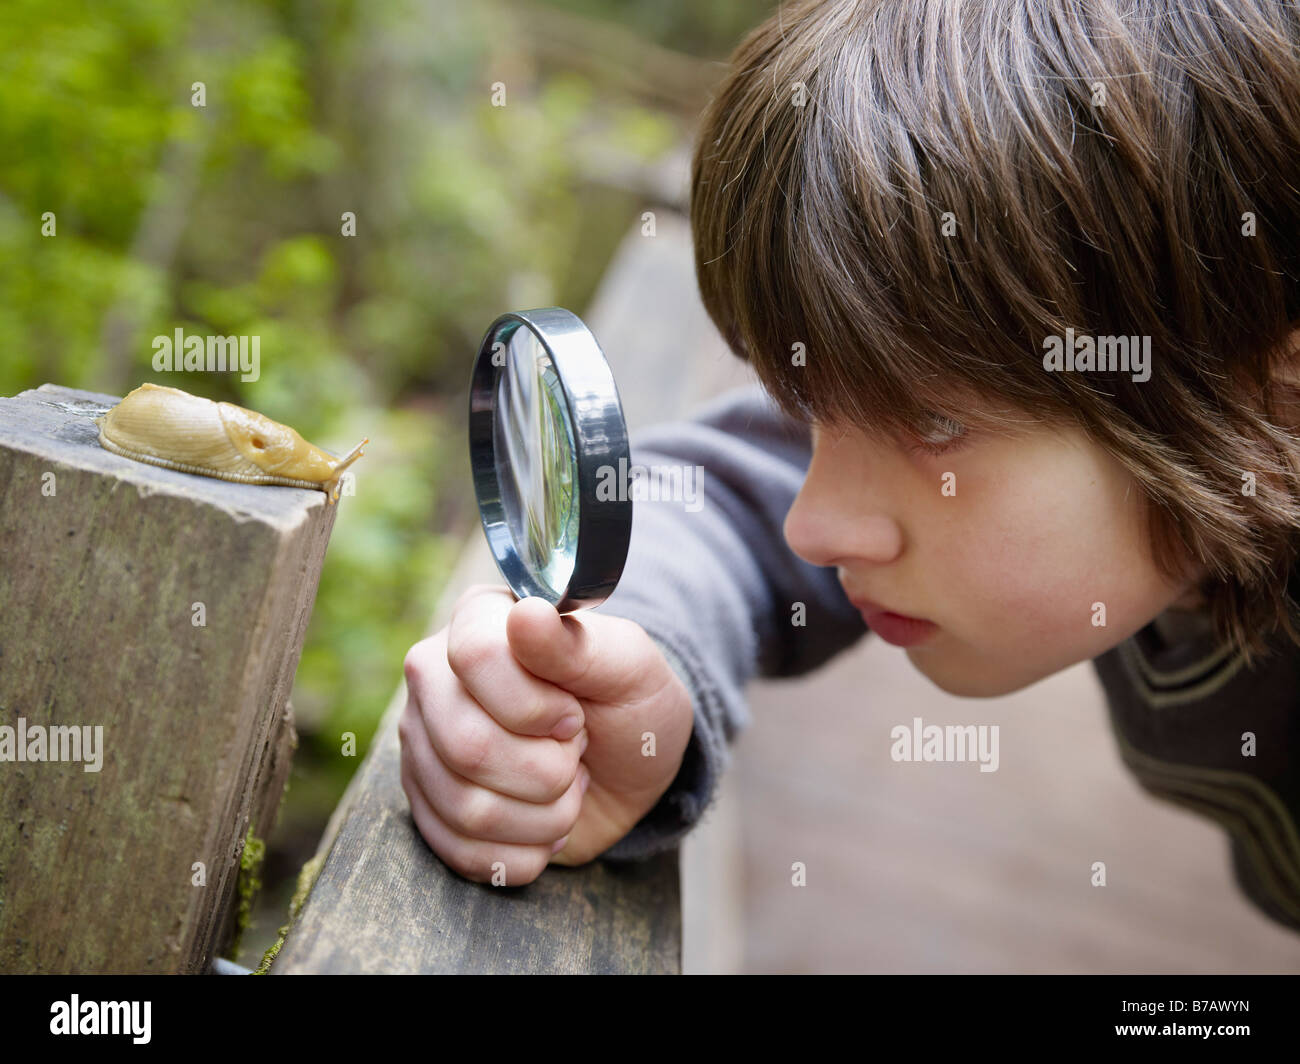 Boy Examining a Banana Slug Through a Magnifying Glass Stock Photo